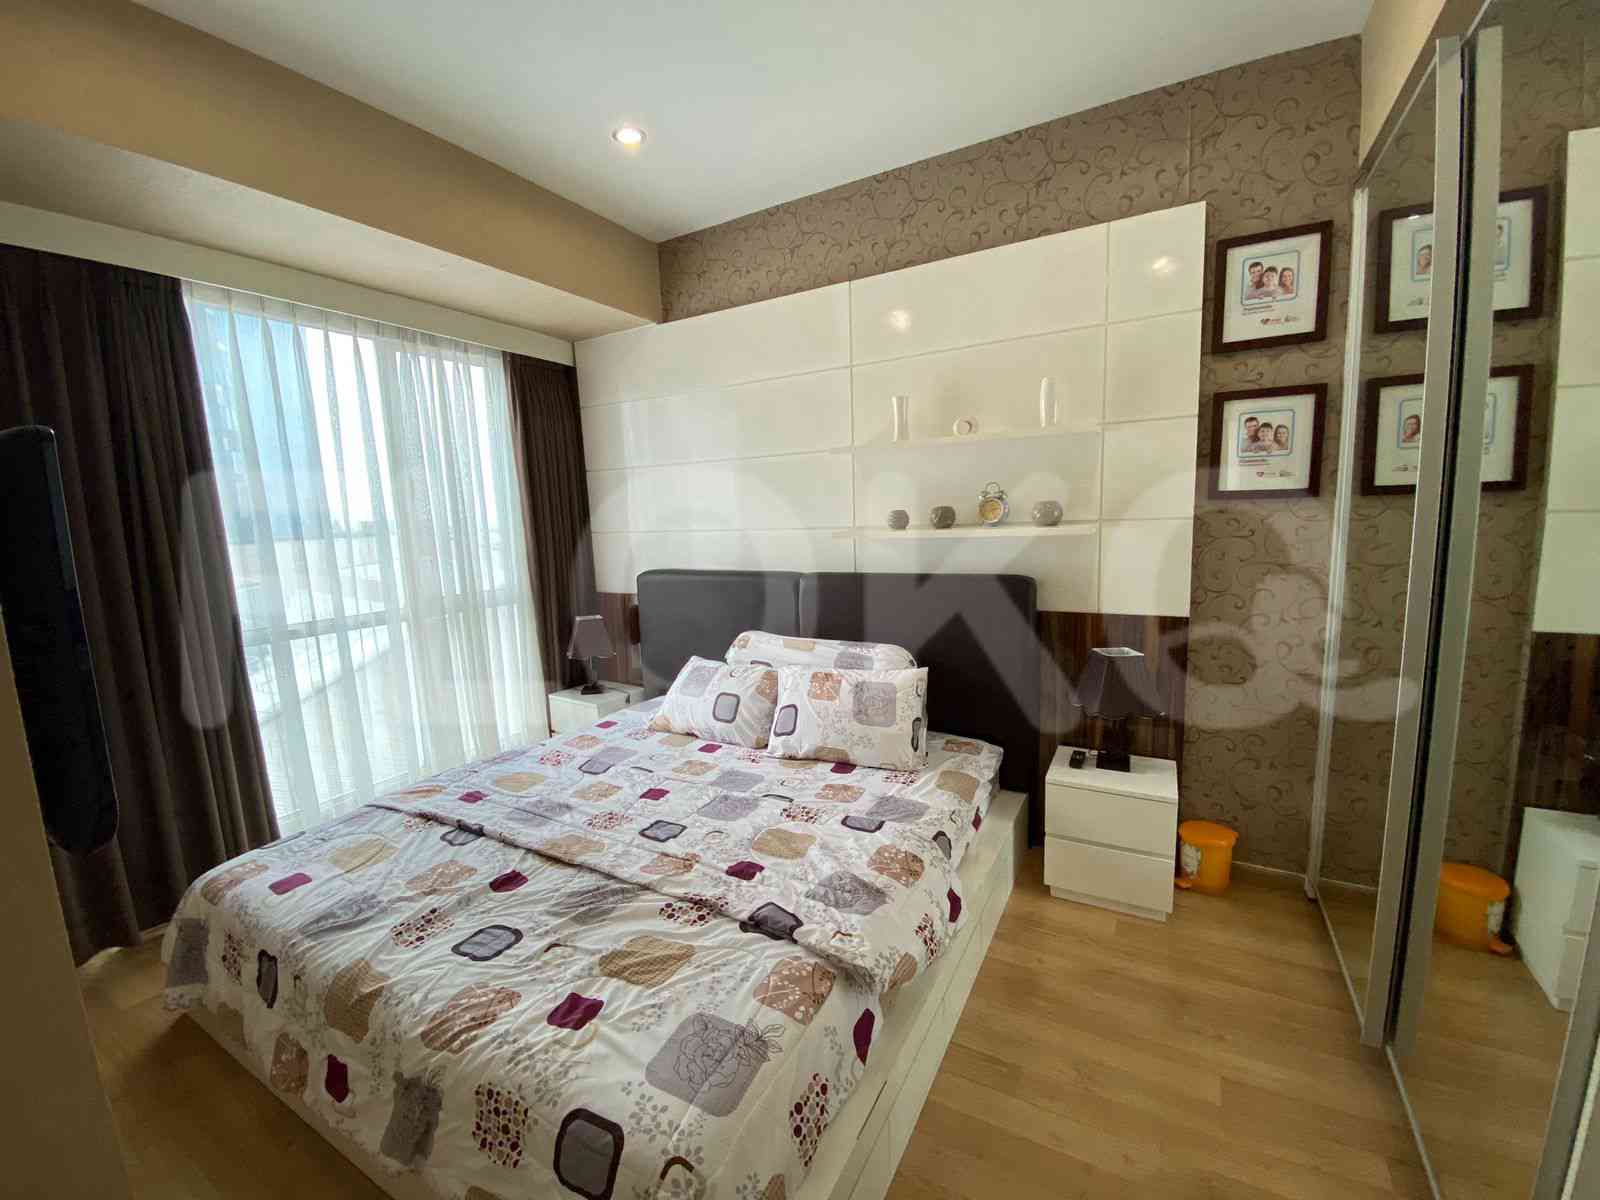 2 Bedroom on 6th Floor for Rent in Casa Grande - ftedfc 6